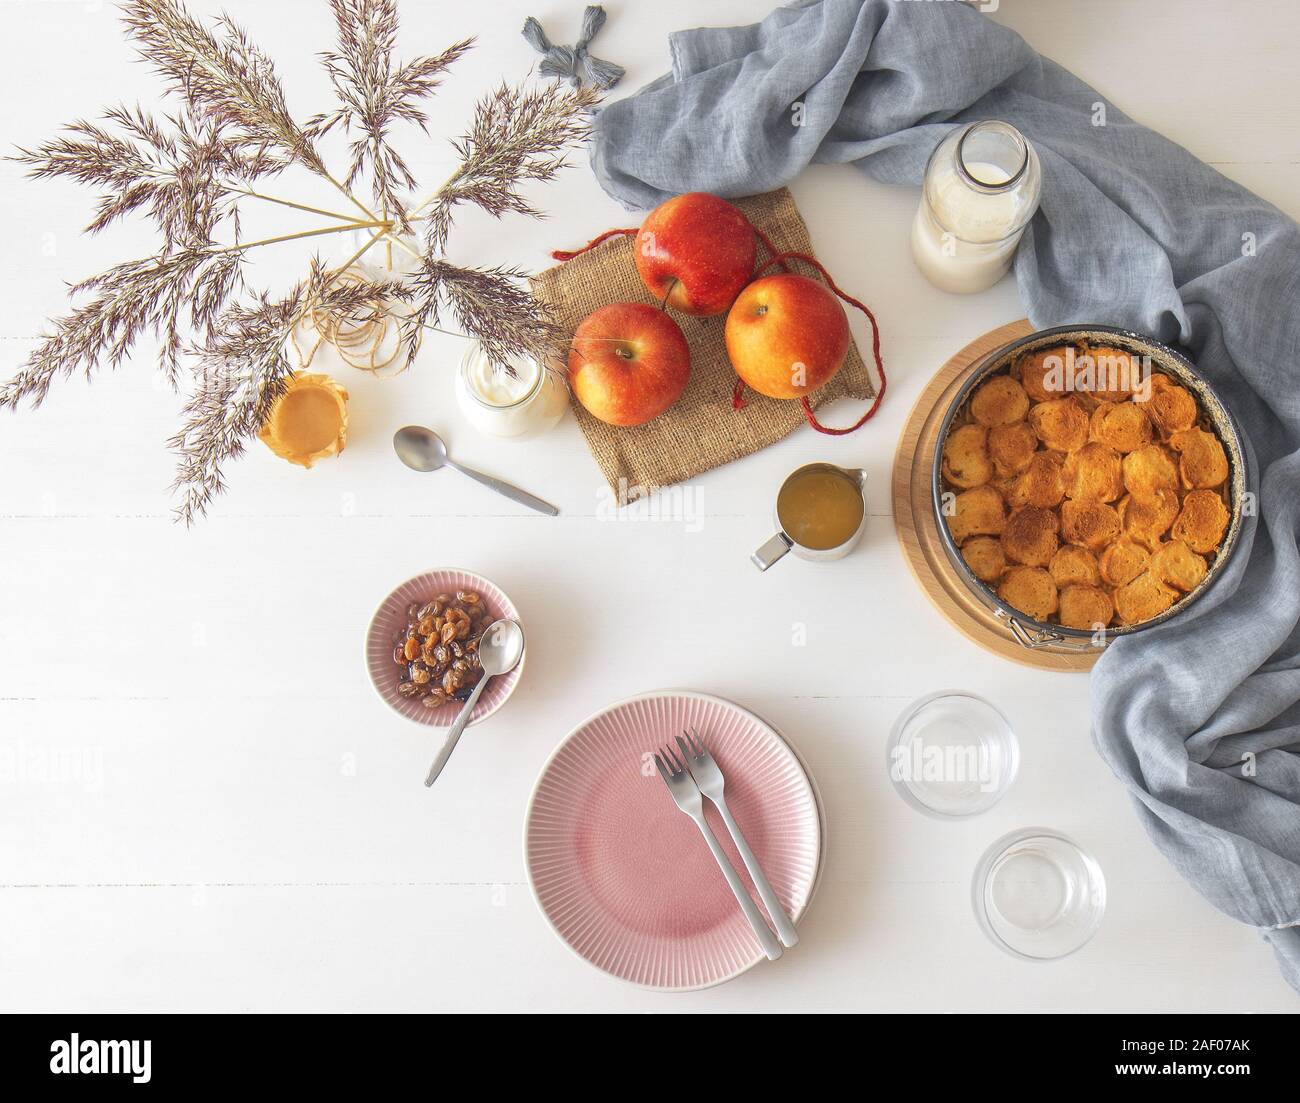 Weiße Holztisch mit Apple Brot und Butter Pudding, jar mit saurer Sahne, Glas Milch, Hintergrund mit ein paar Äpfel und Vase mit trockenen gra eingerichtet Stockfoto